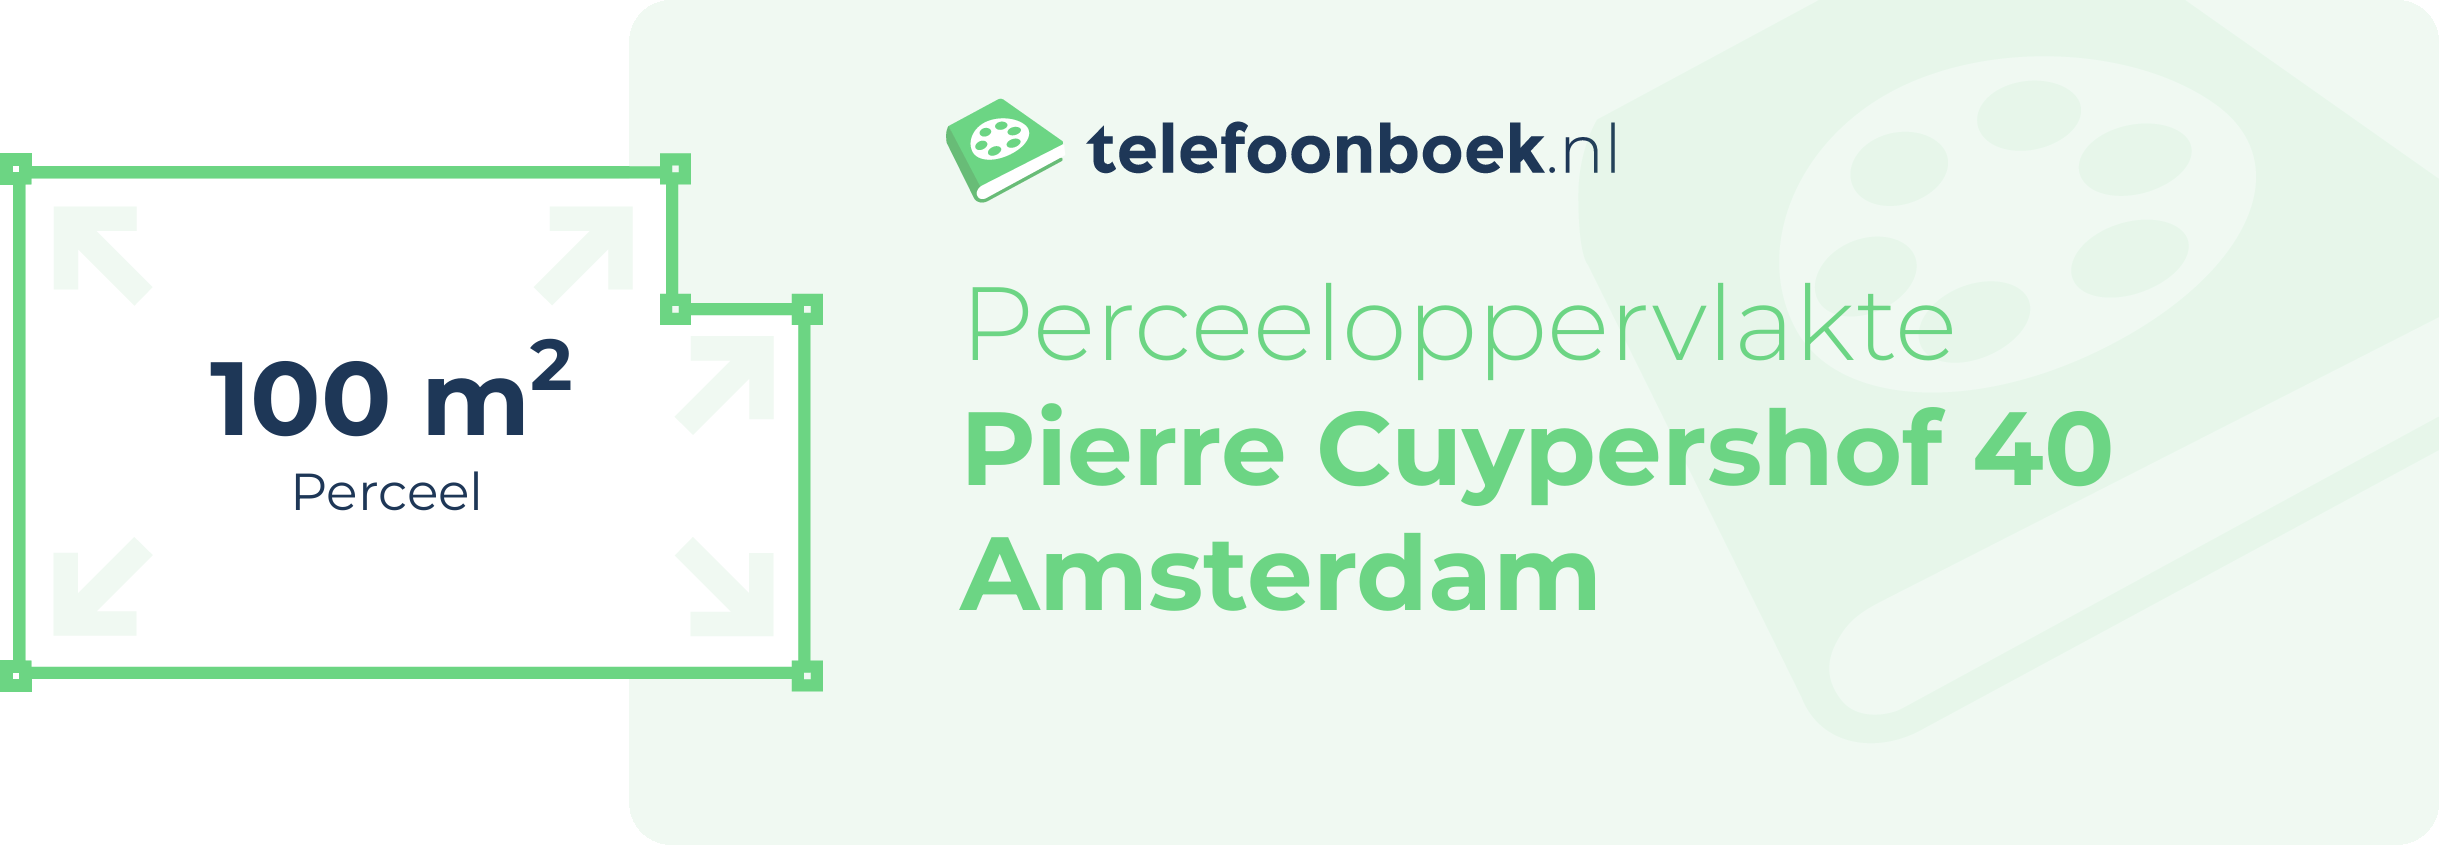 Perceeloppervlakte Pierre Cuypershof 40 Amsterdam